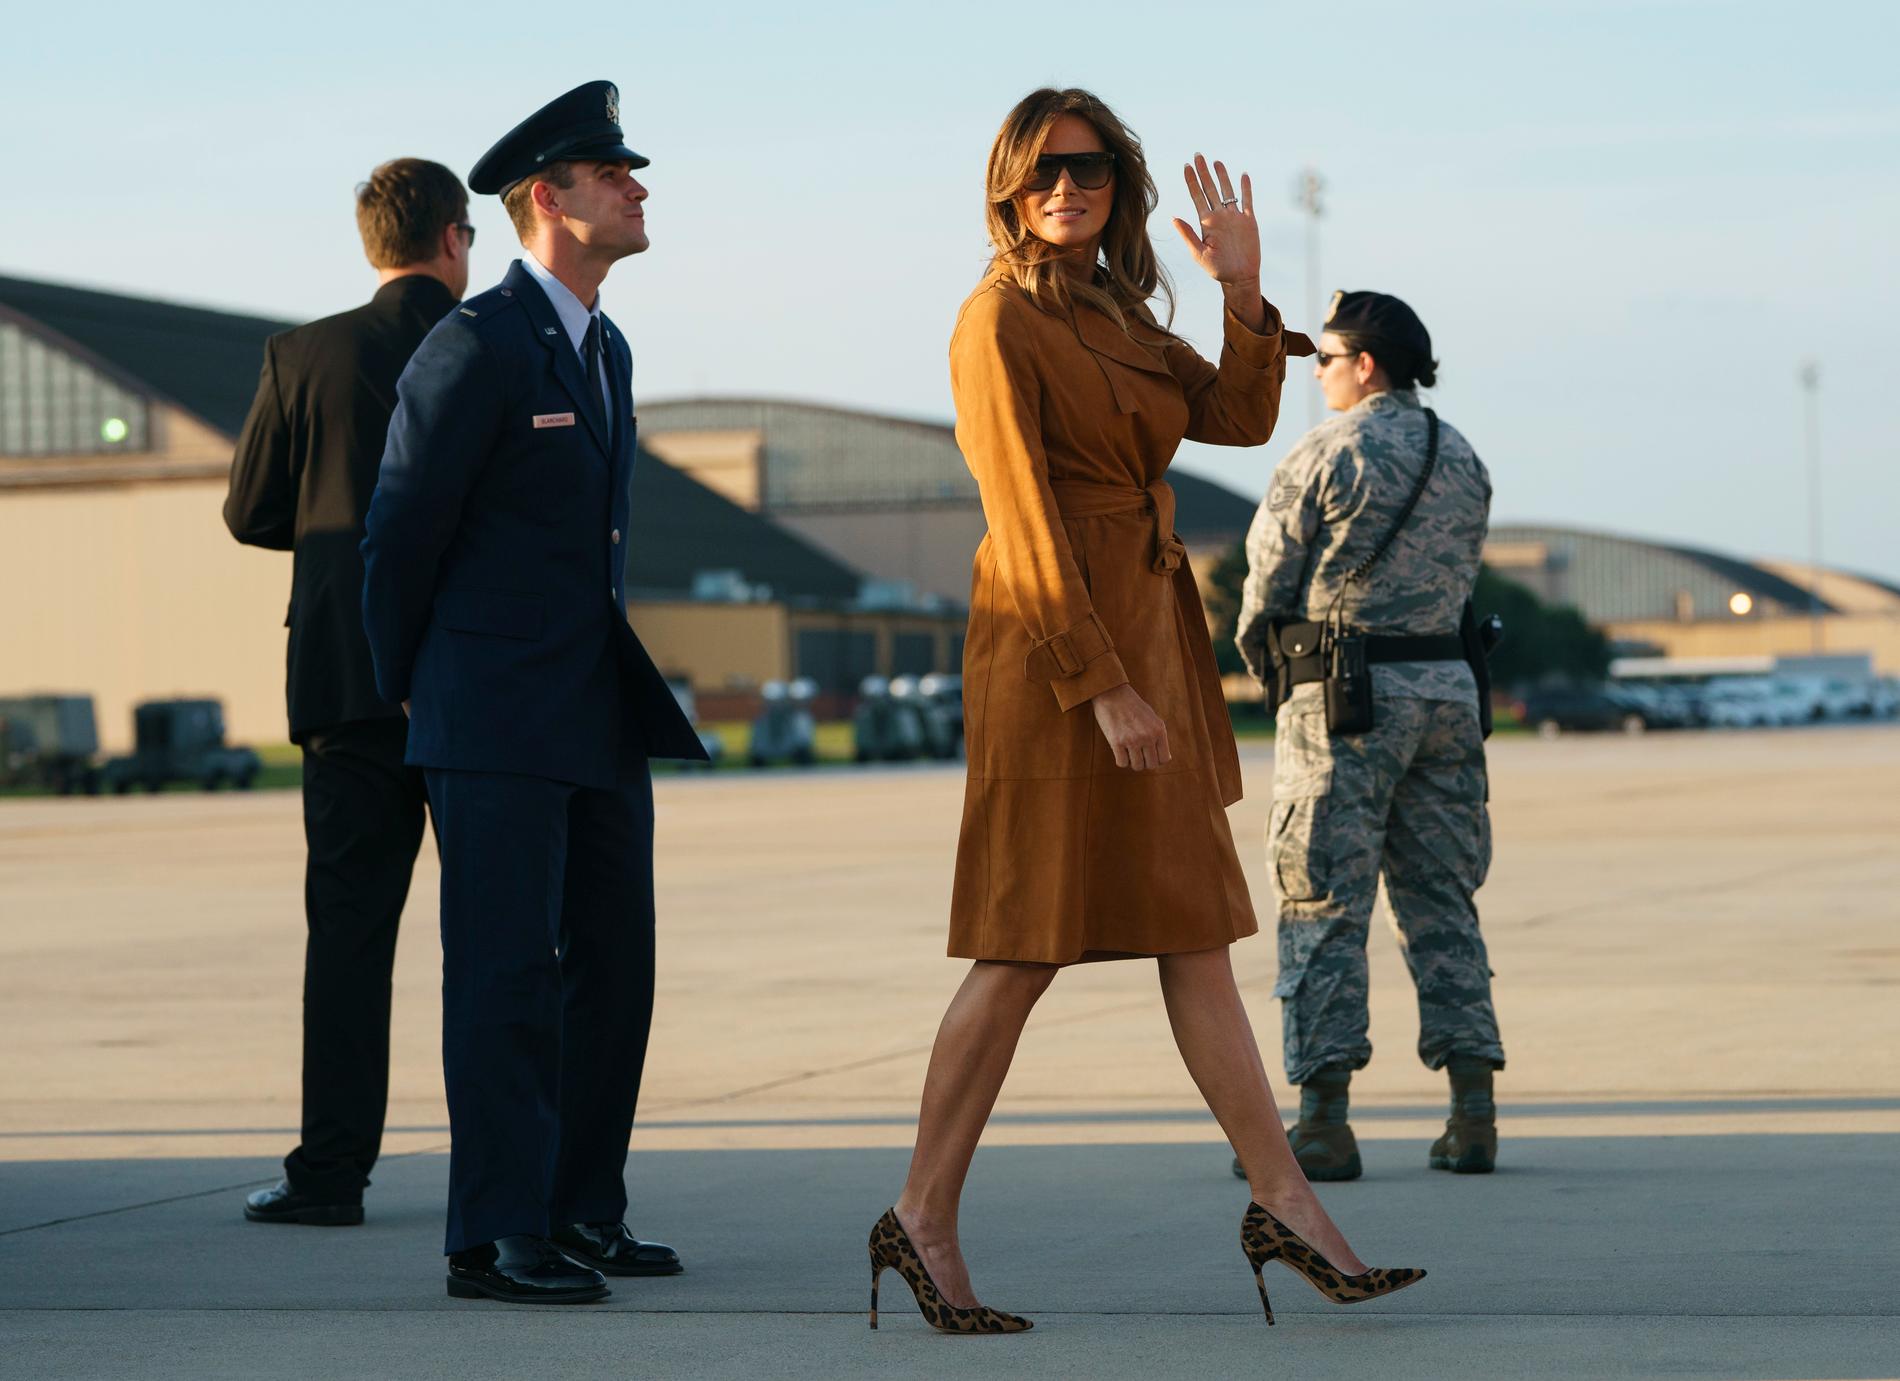 USA:s första dam Melania Trump vinkar på flygplatsen, på väg till flyget som ska ta henne till Afrika.